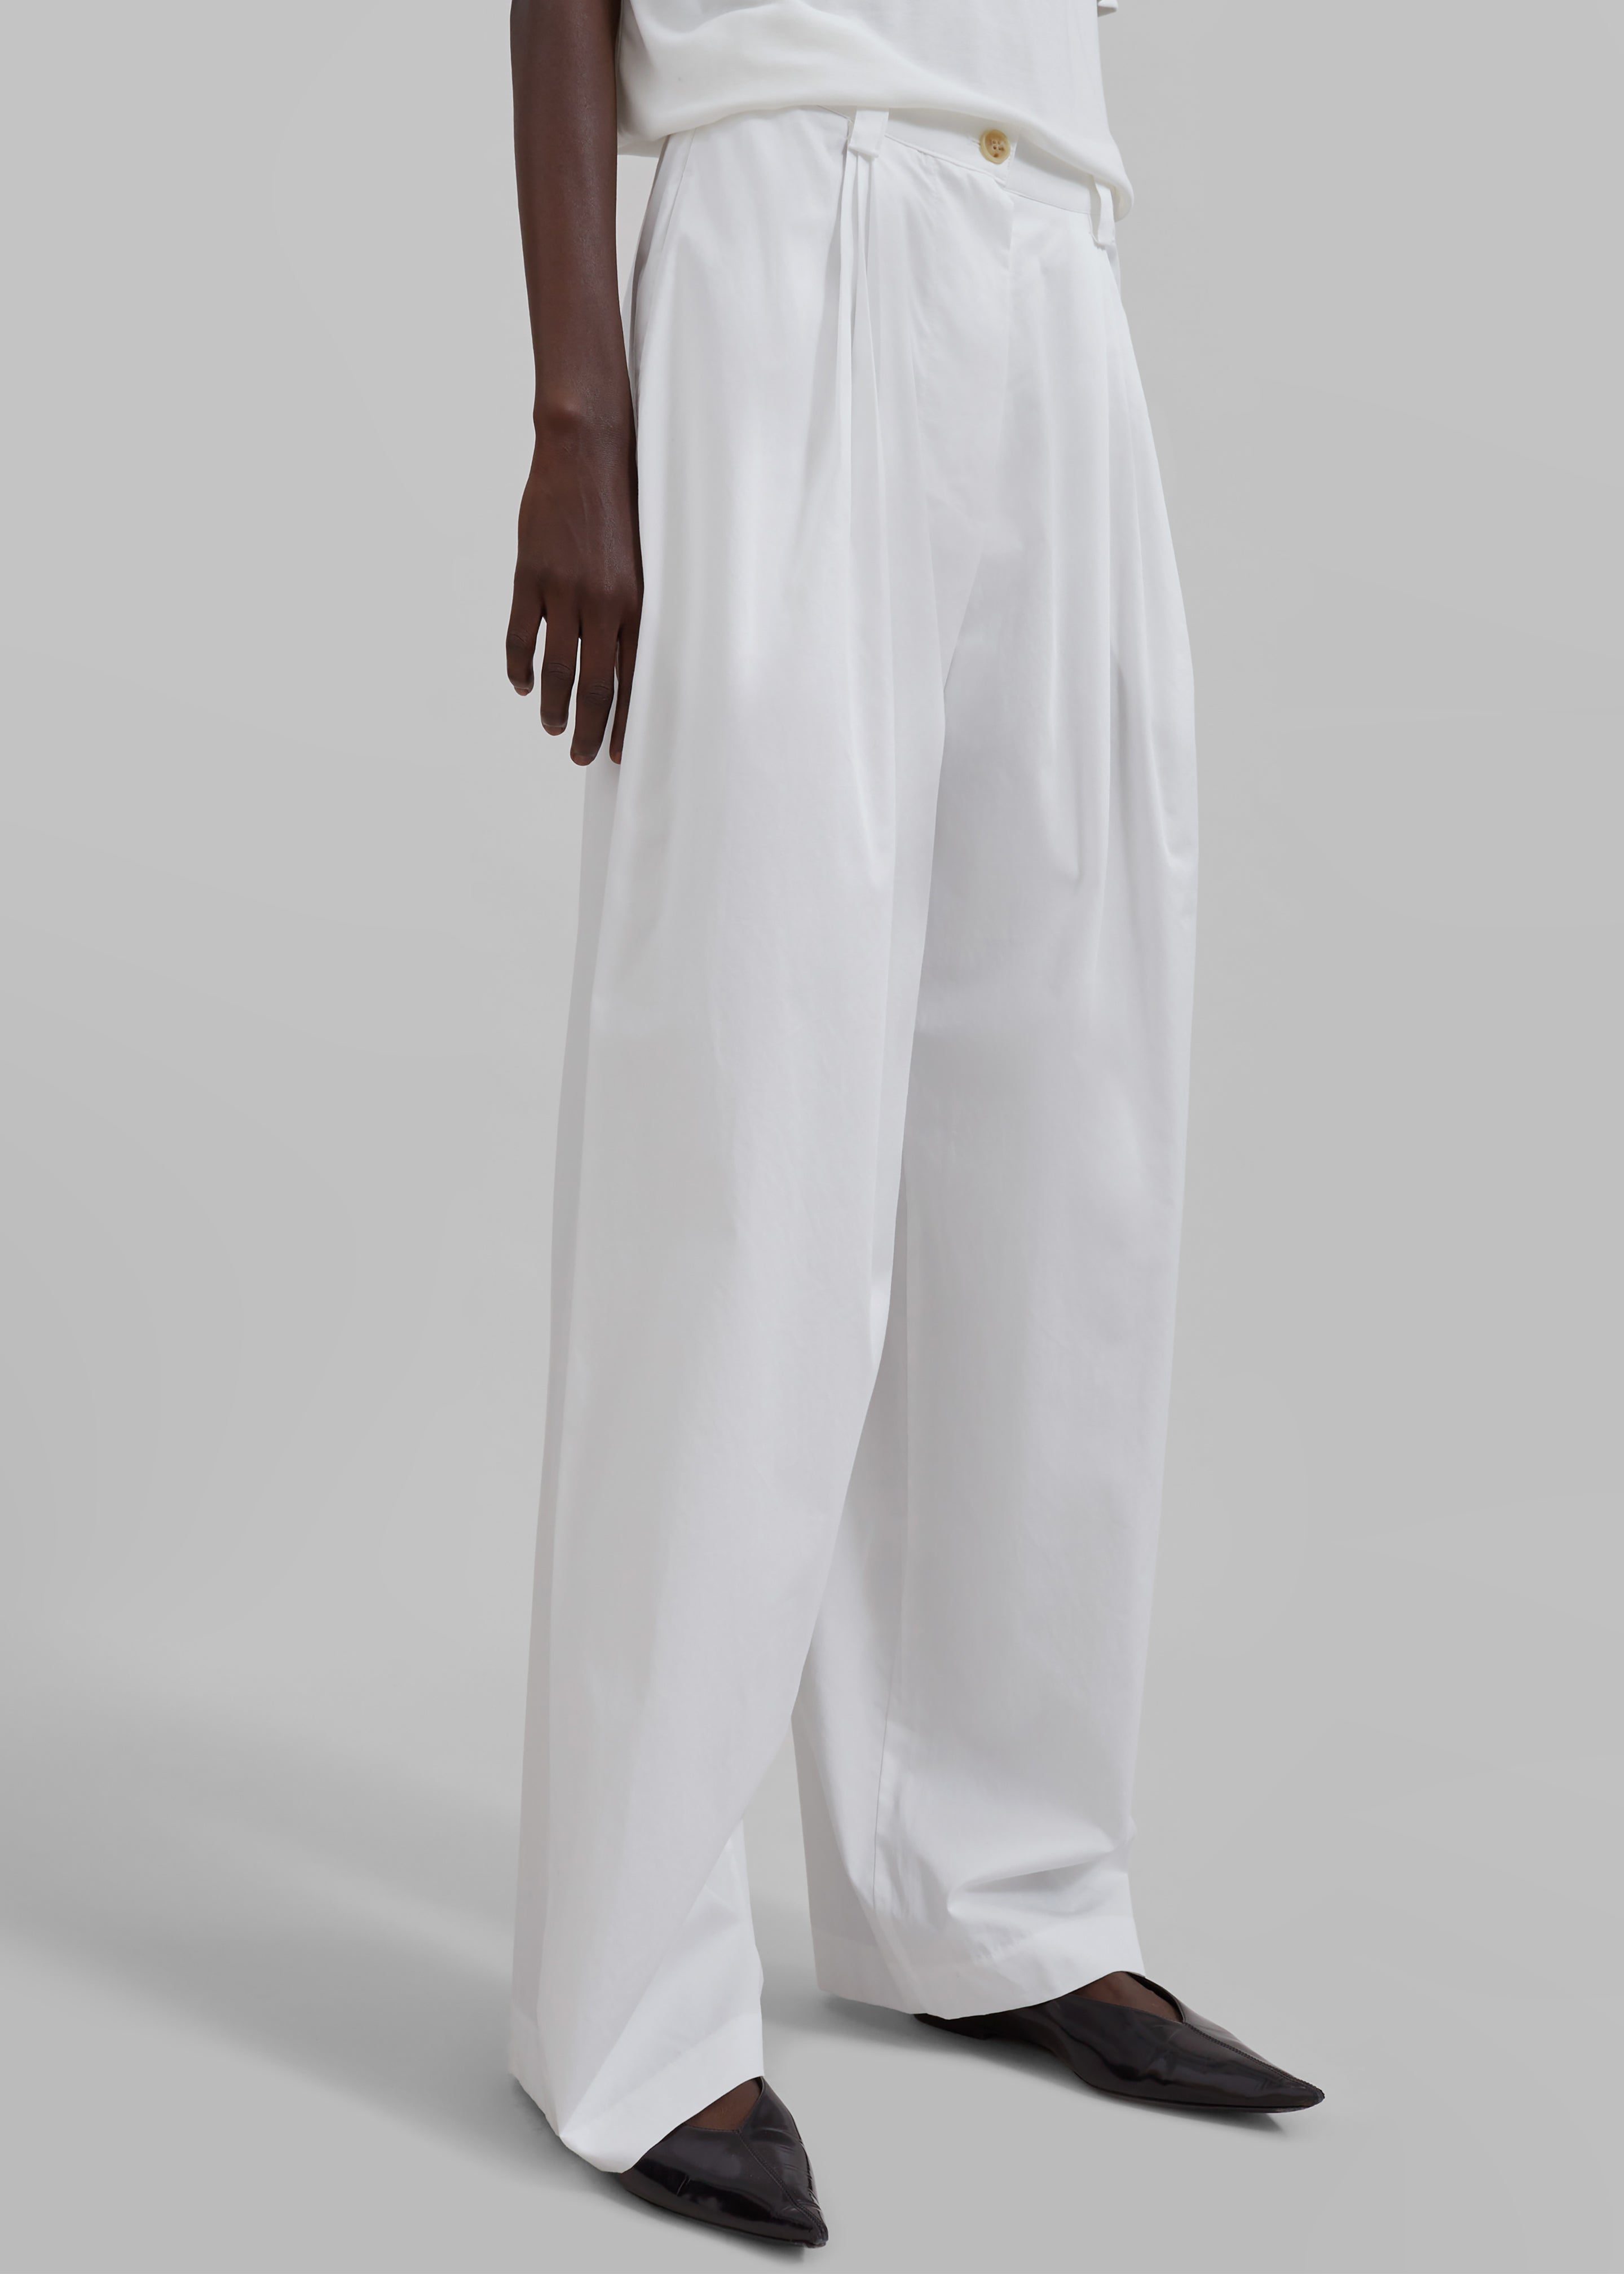 Lea Cotton Trousers - White - 5